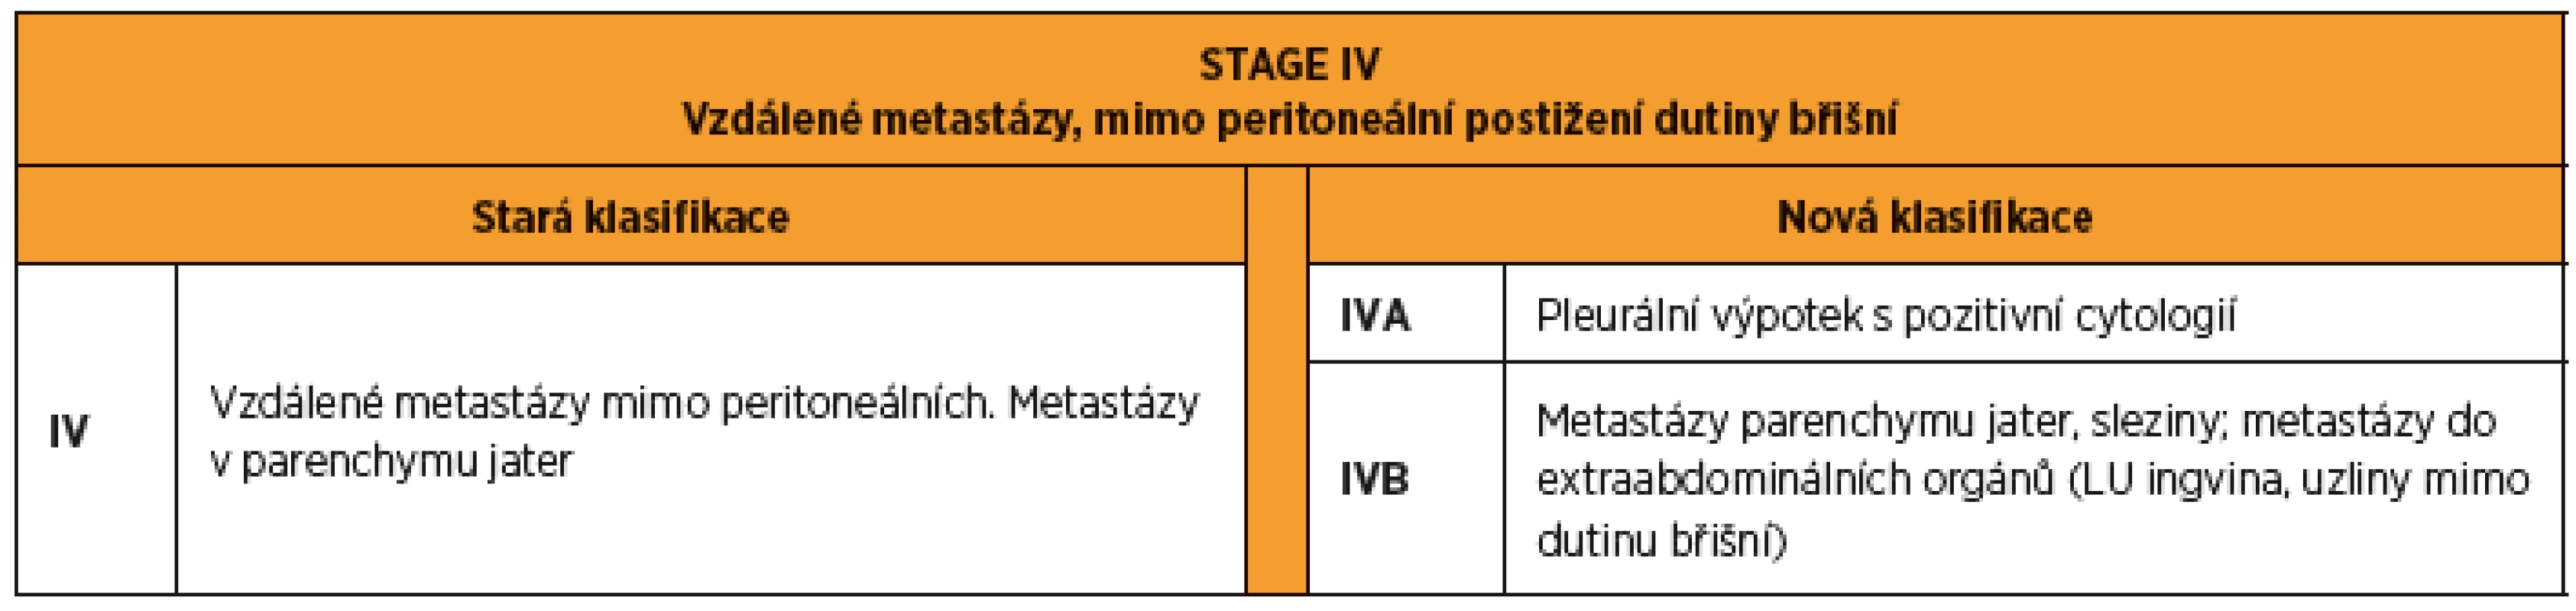 FIGO 2014 stage IV karcinomu ovaria, tuby a peritonea. Rozdíly mezi starou a novou klasifikací.